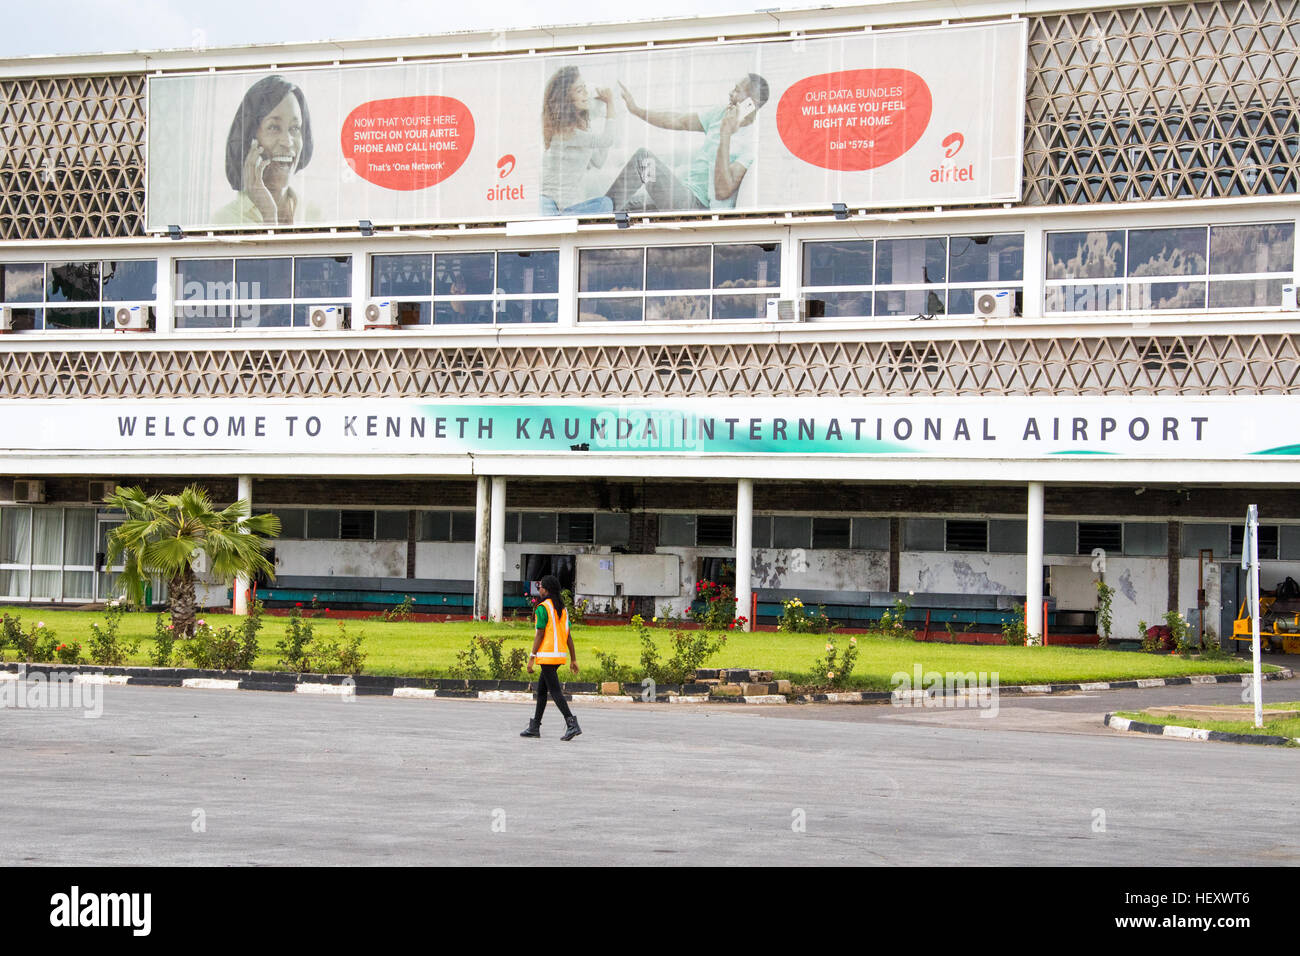 Kenneth Kaunda International Airport, Lusaka, Zambia Stock Photo